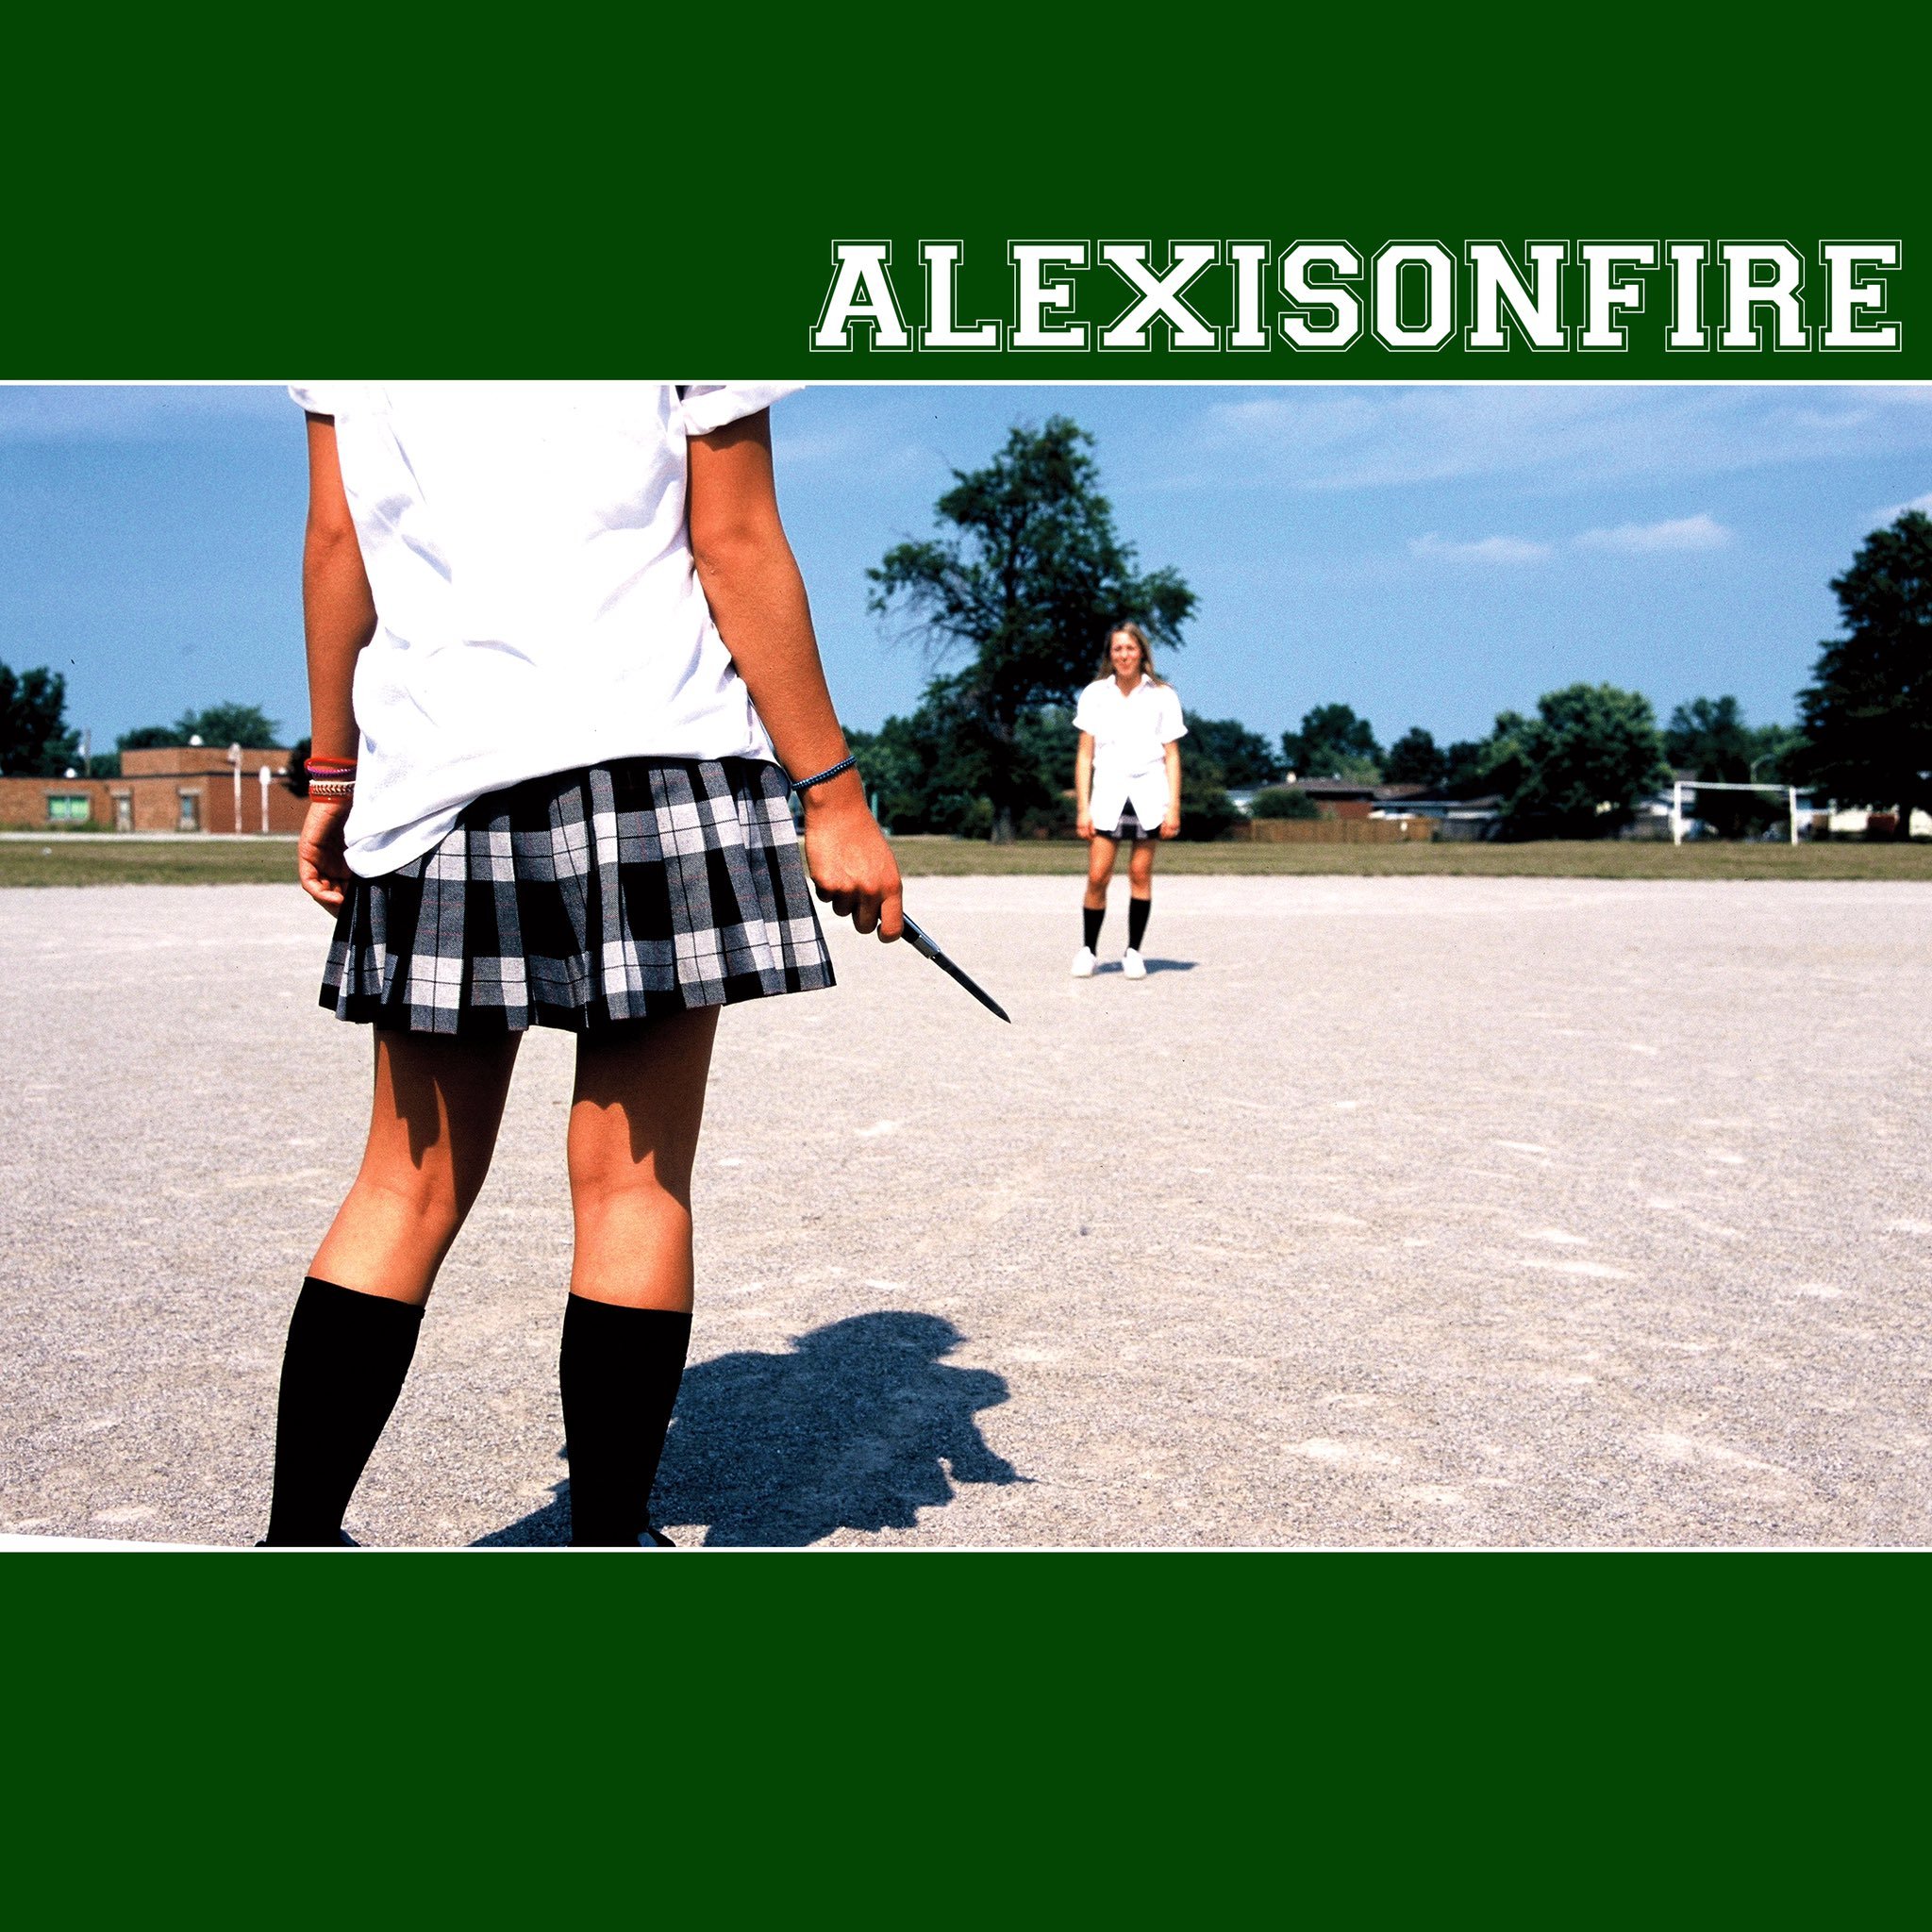 Alexisonfire - Alexisonfire (2014) 24bit FLAC Download